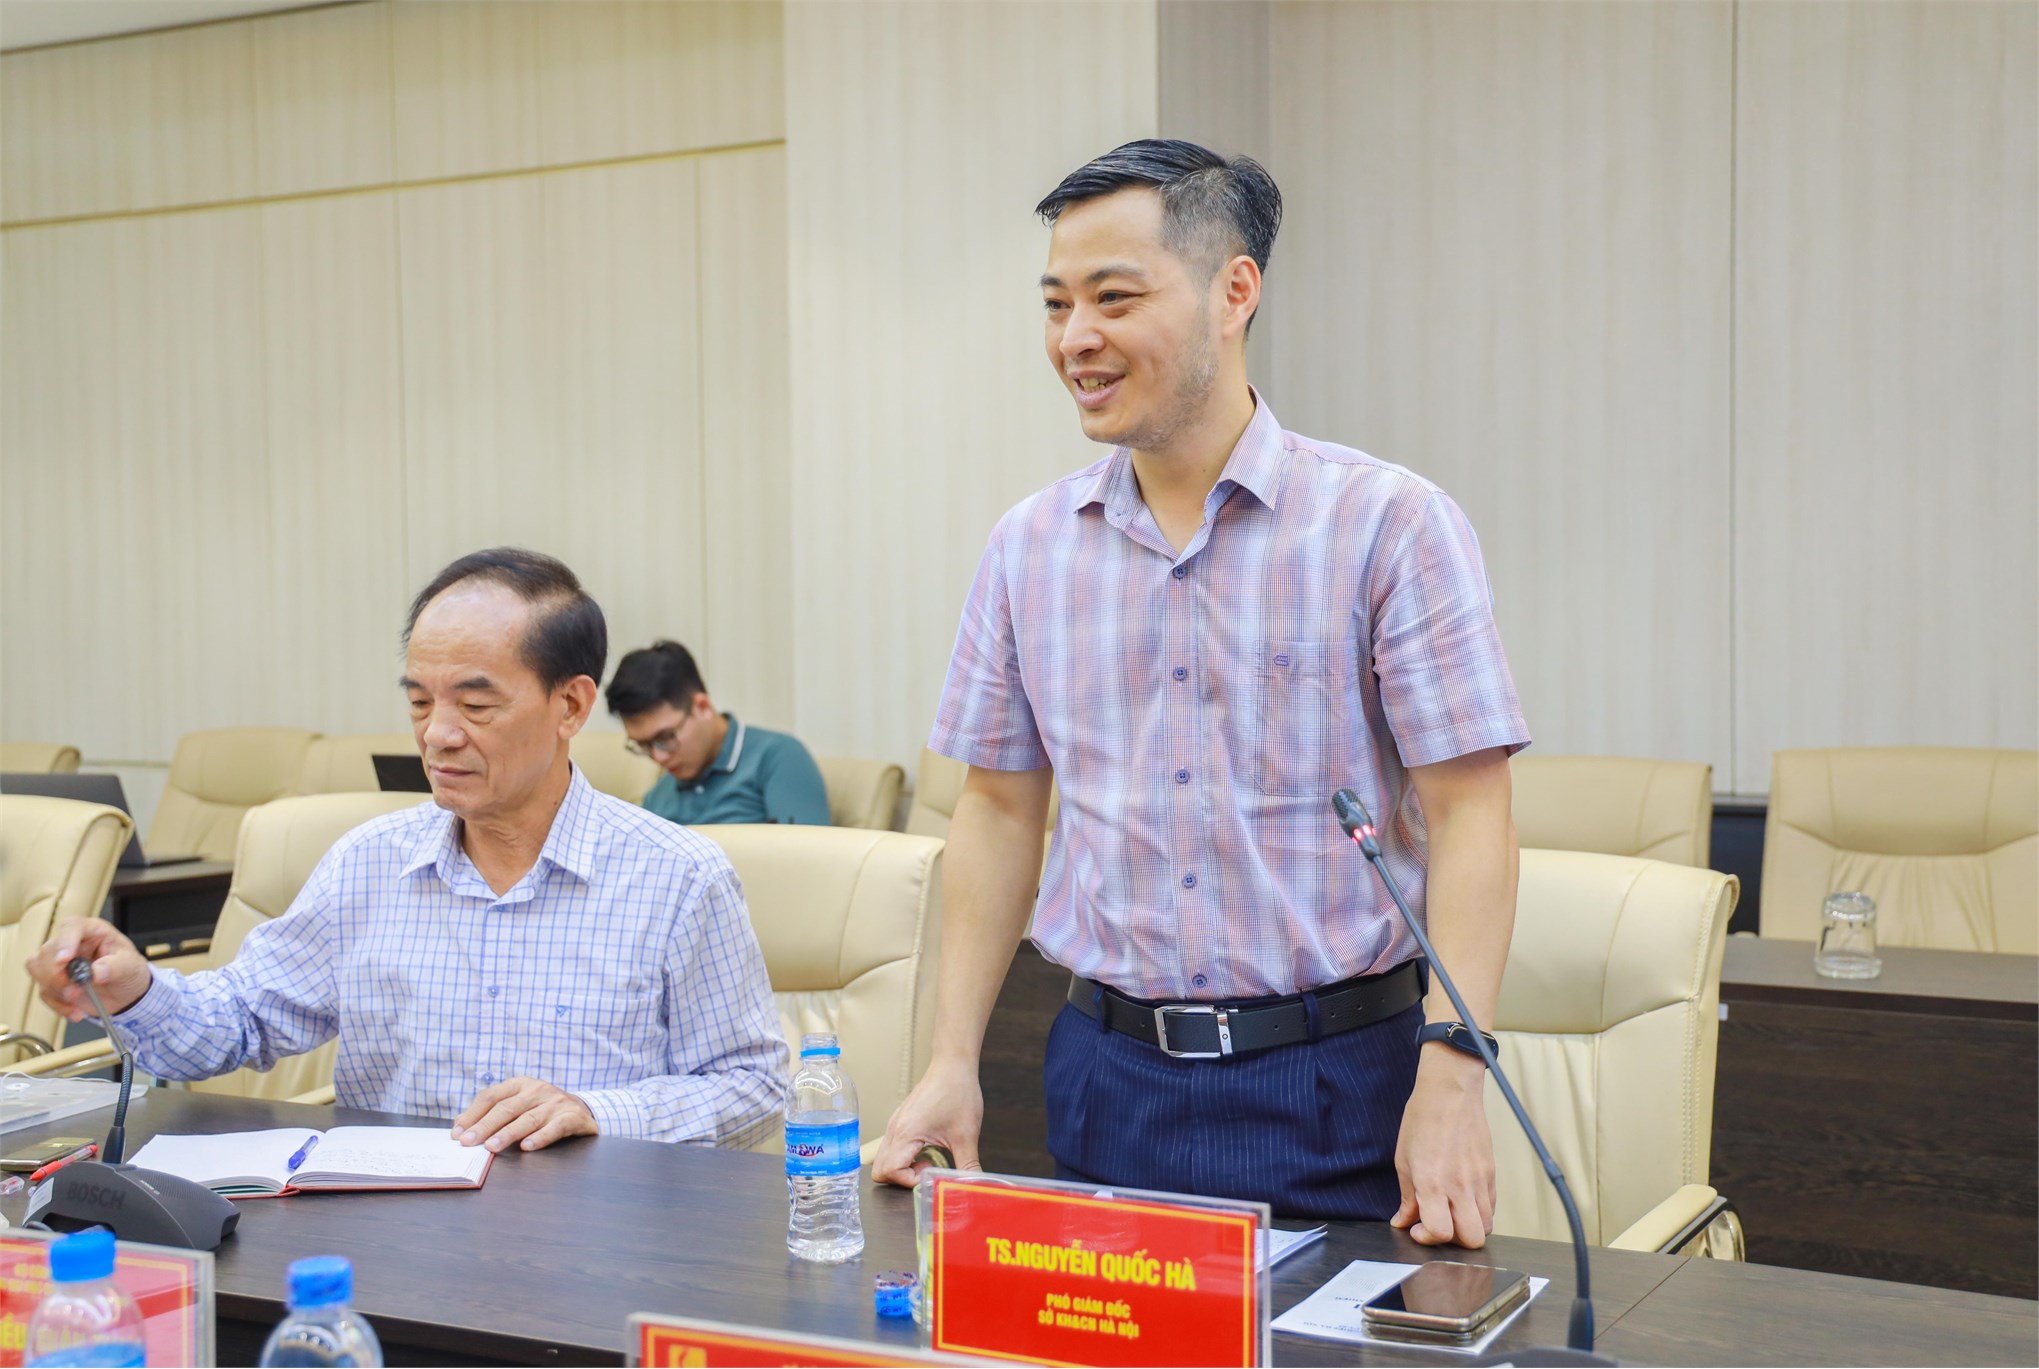 Đại học Công nghiệp Hà Nội hợp tác, phát triển khoa học công nghệ trên địa bản Thủ đô Hà Nội